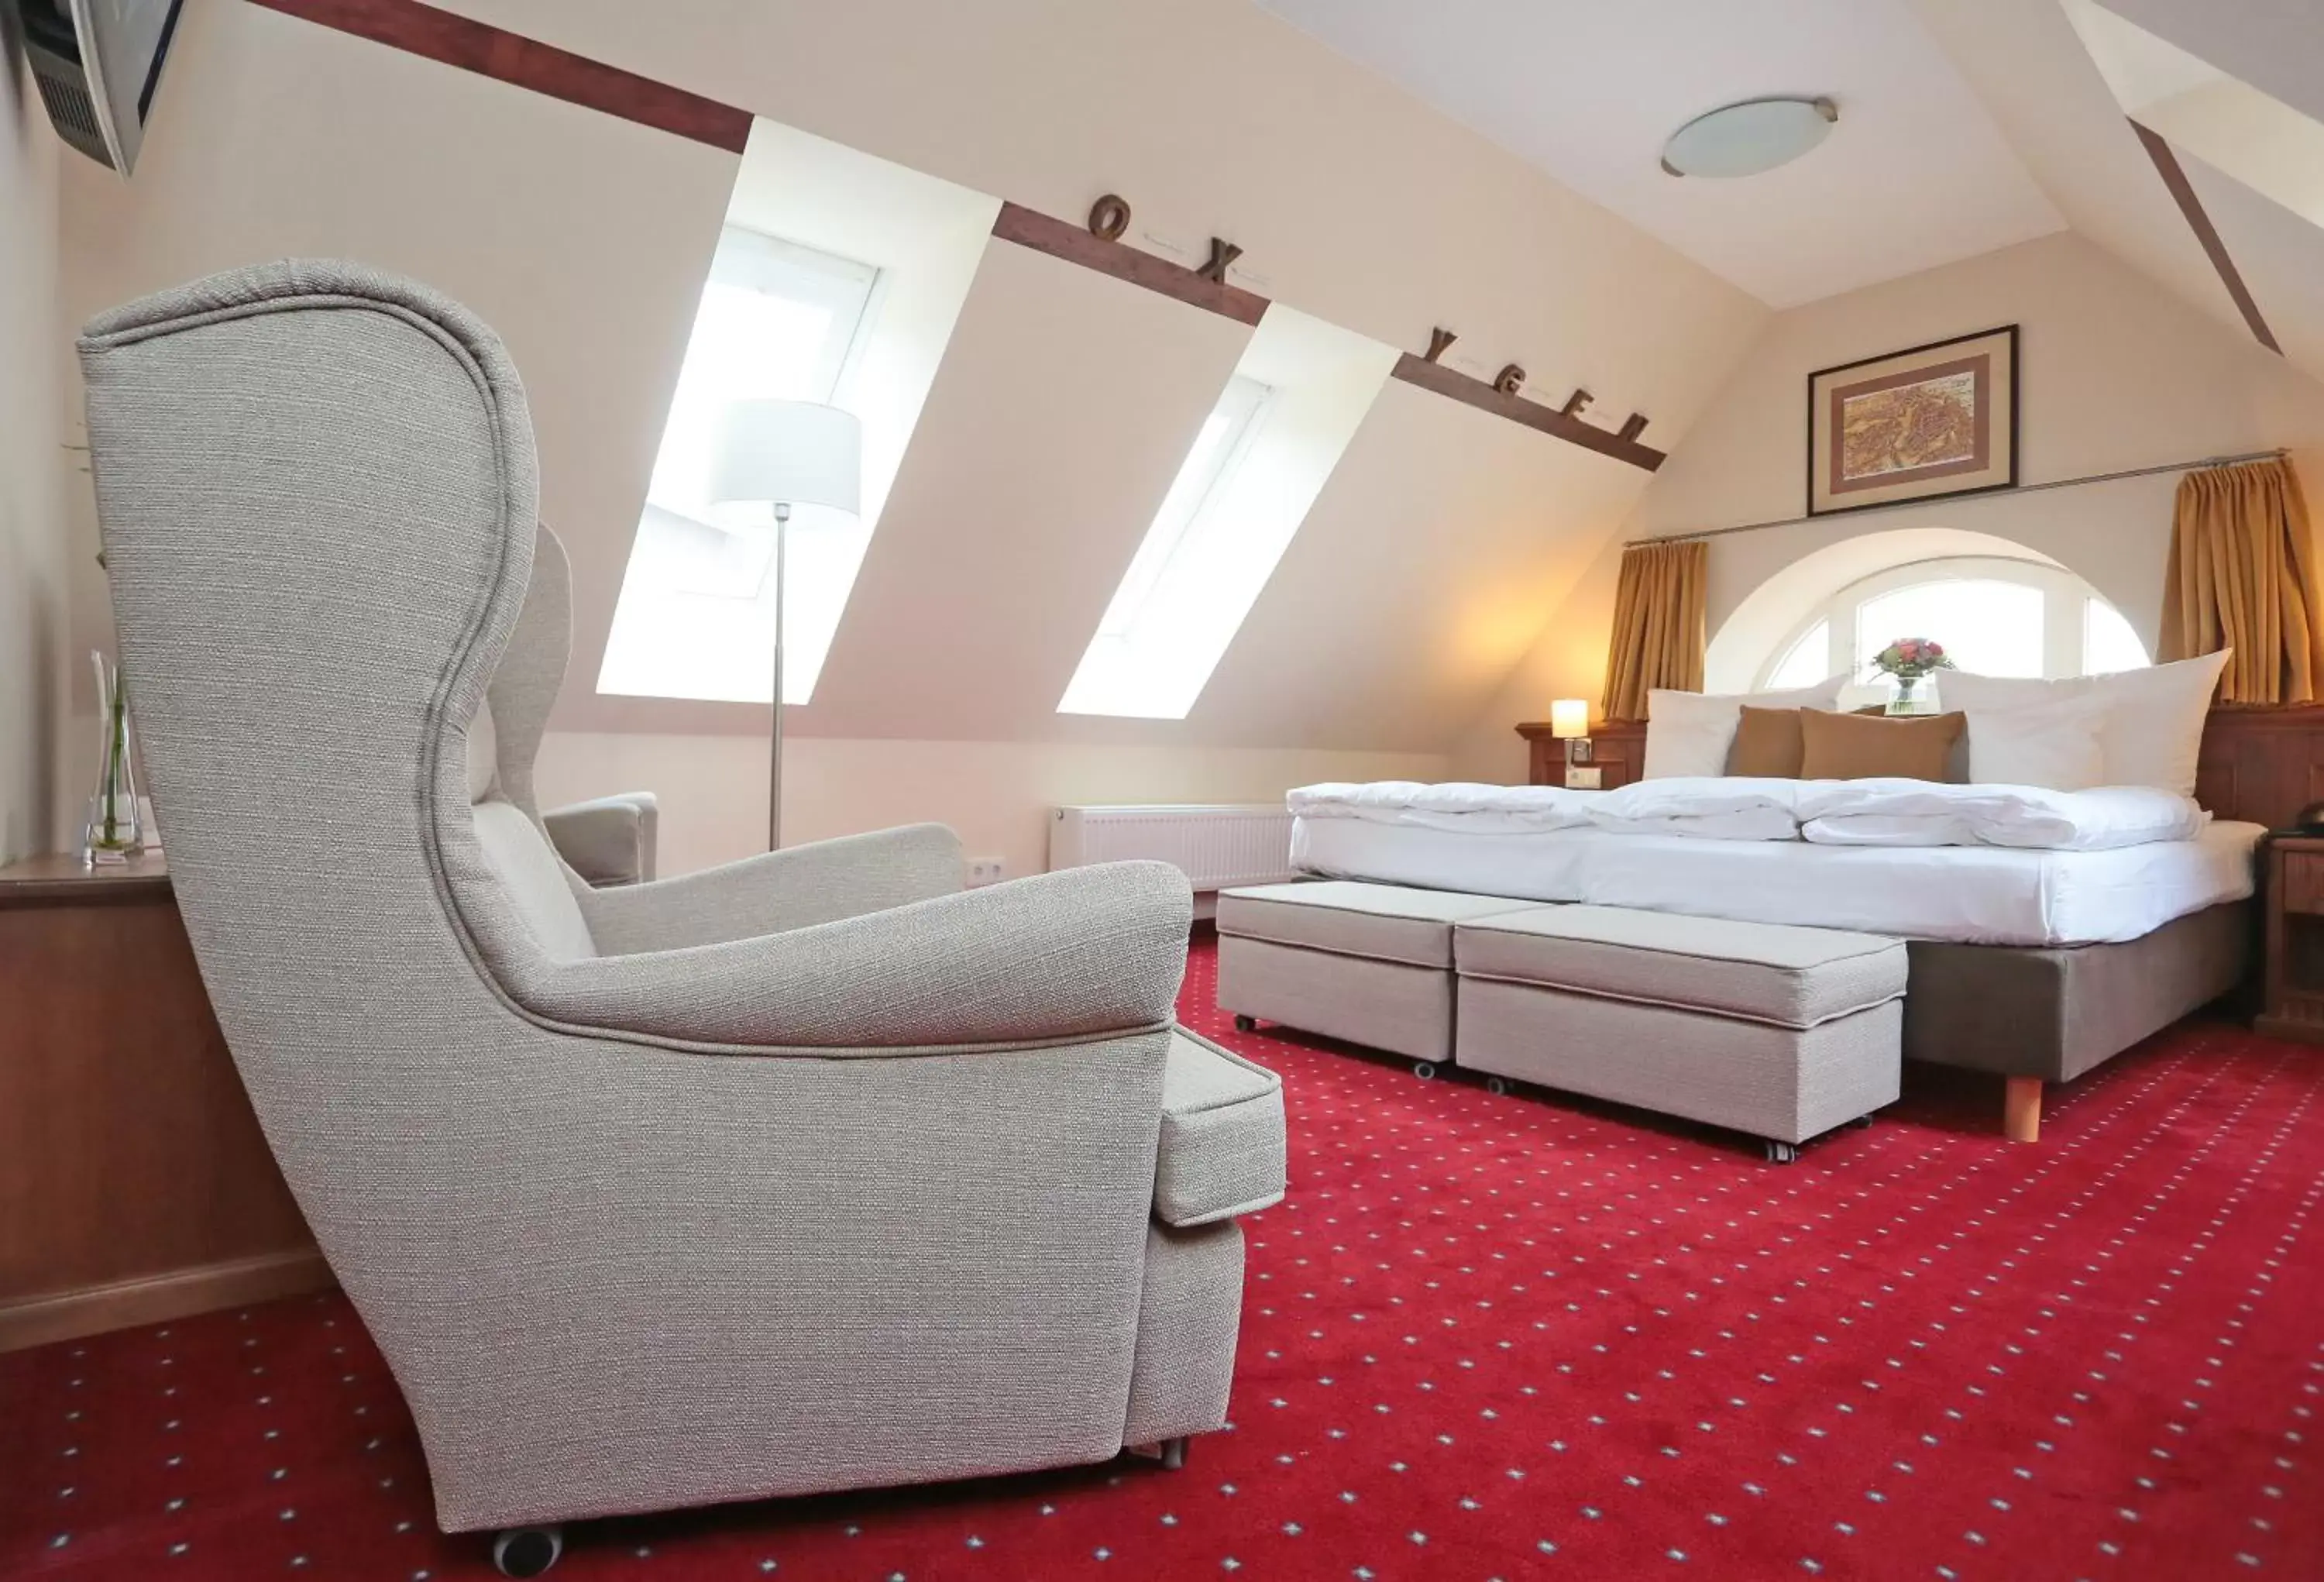 Photo of the whole room in Romantik Hotel Scheelehof Stralsund